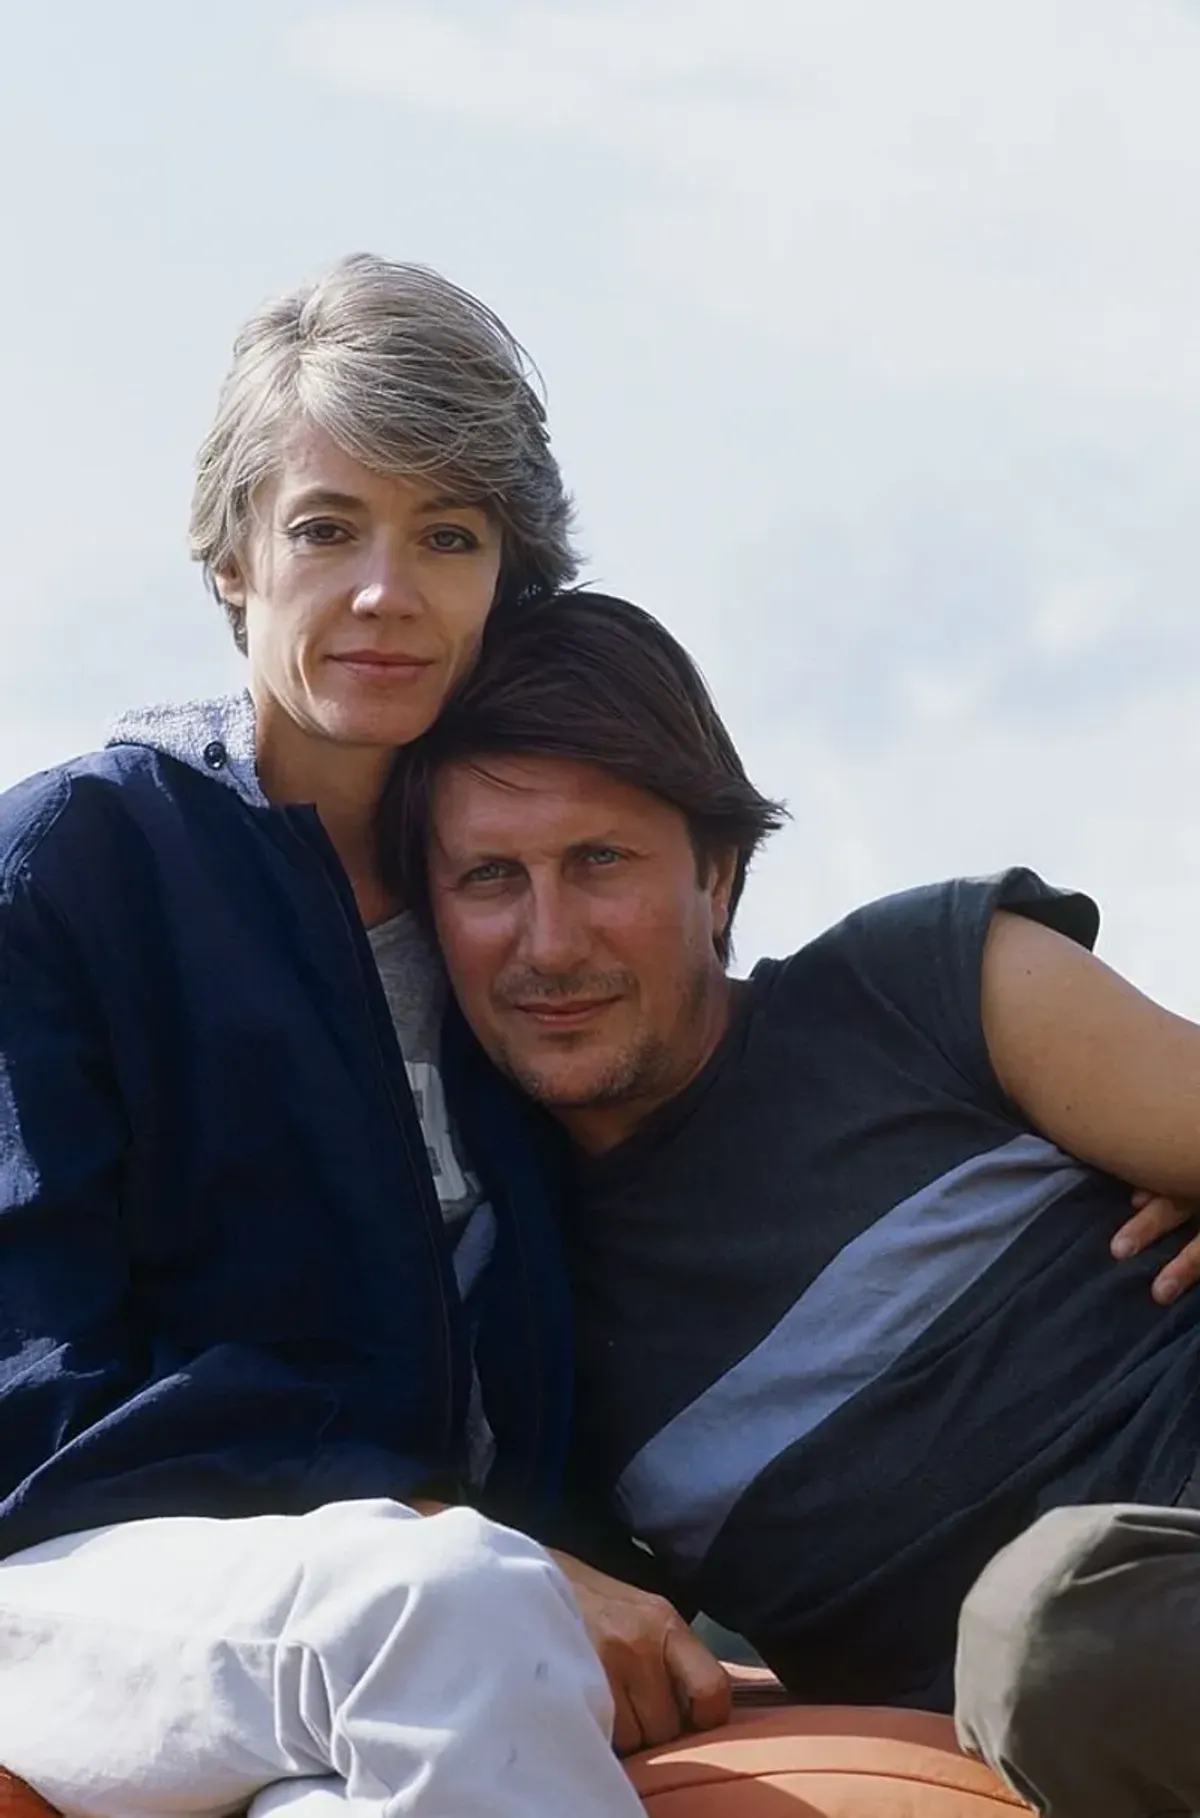 Jacques Dutronc et Francoise Hardy en Corsica. | Photo : Getty Images